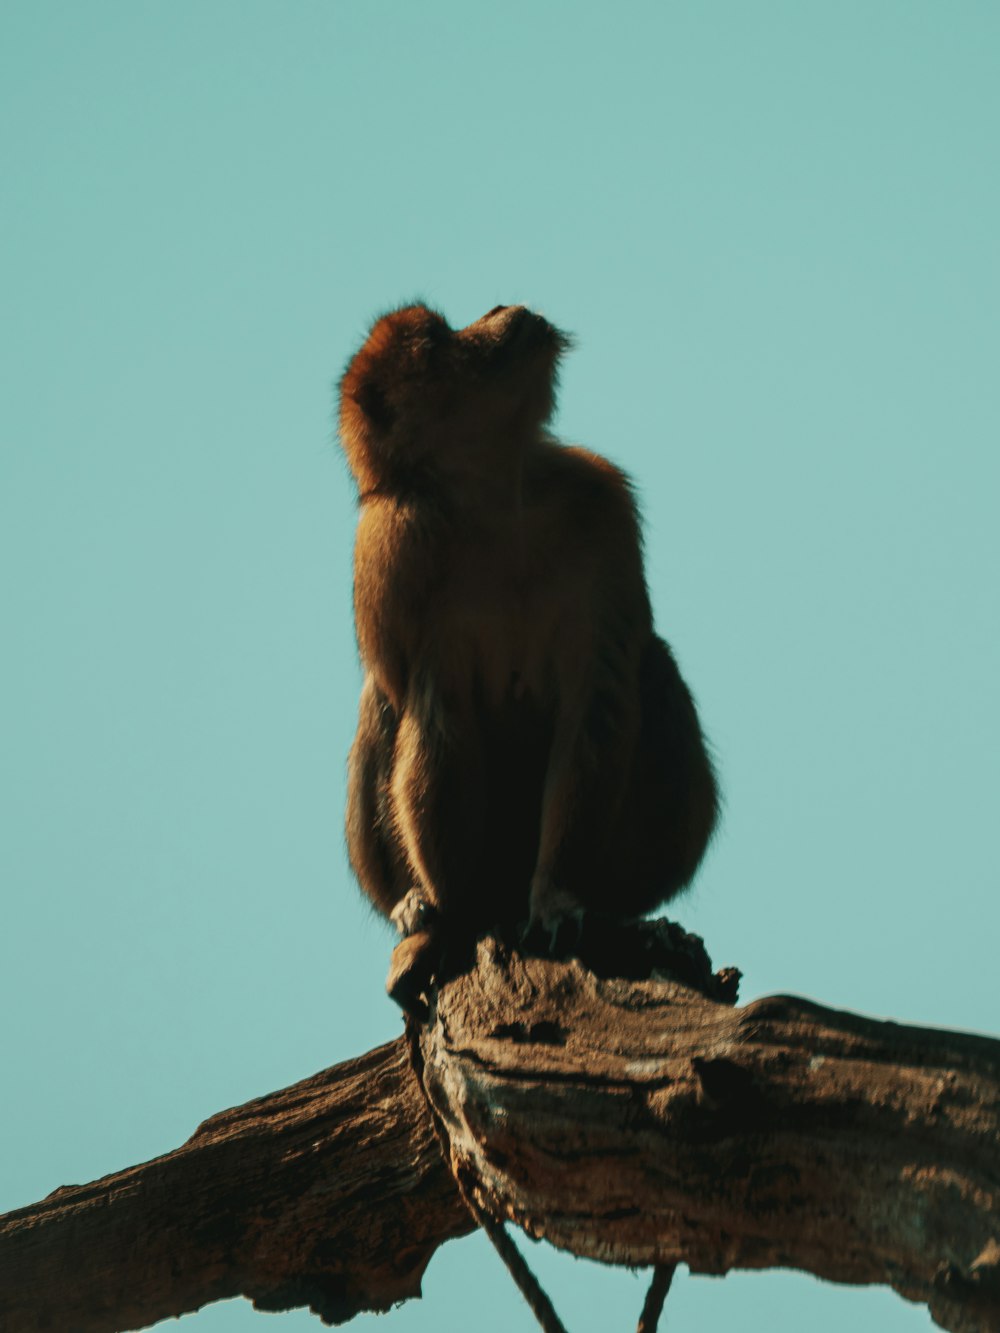 Brauner Affe sitzt tagsüber auf braunem Holzstamm unter blauem Himmel